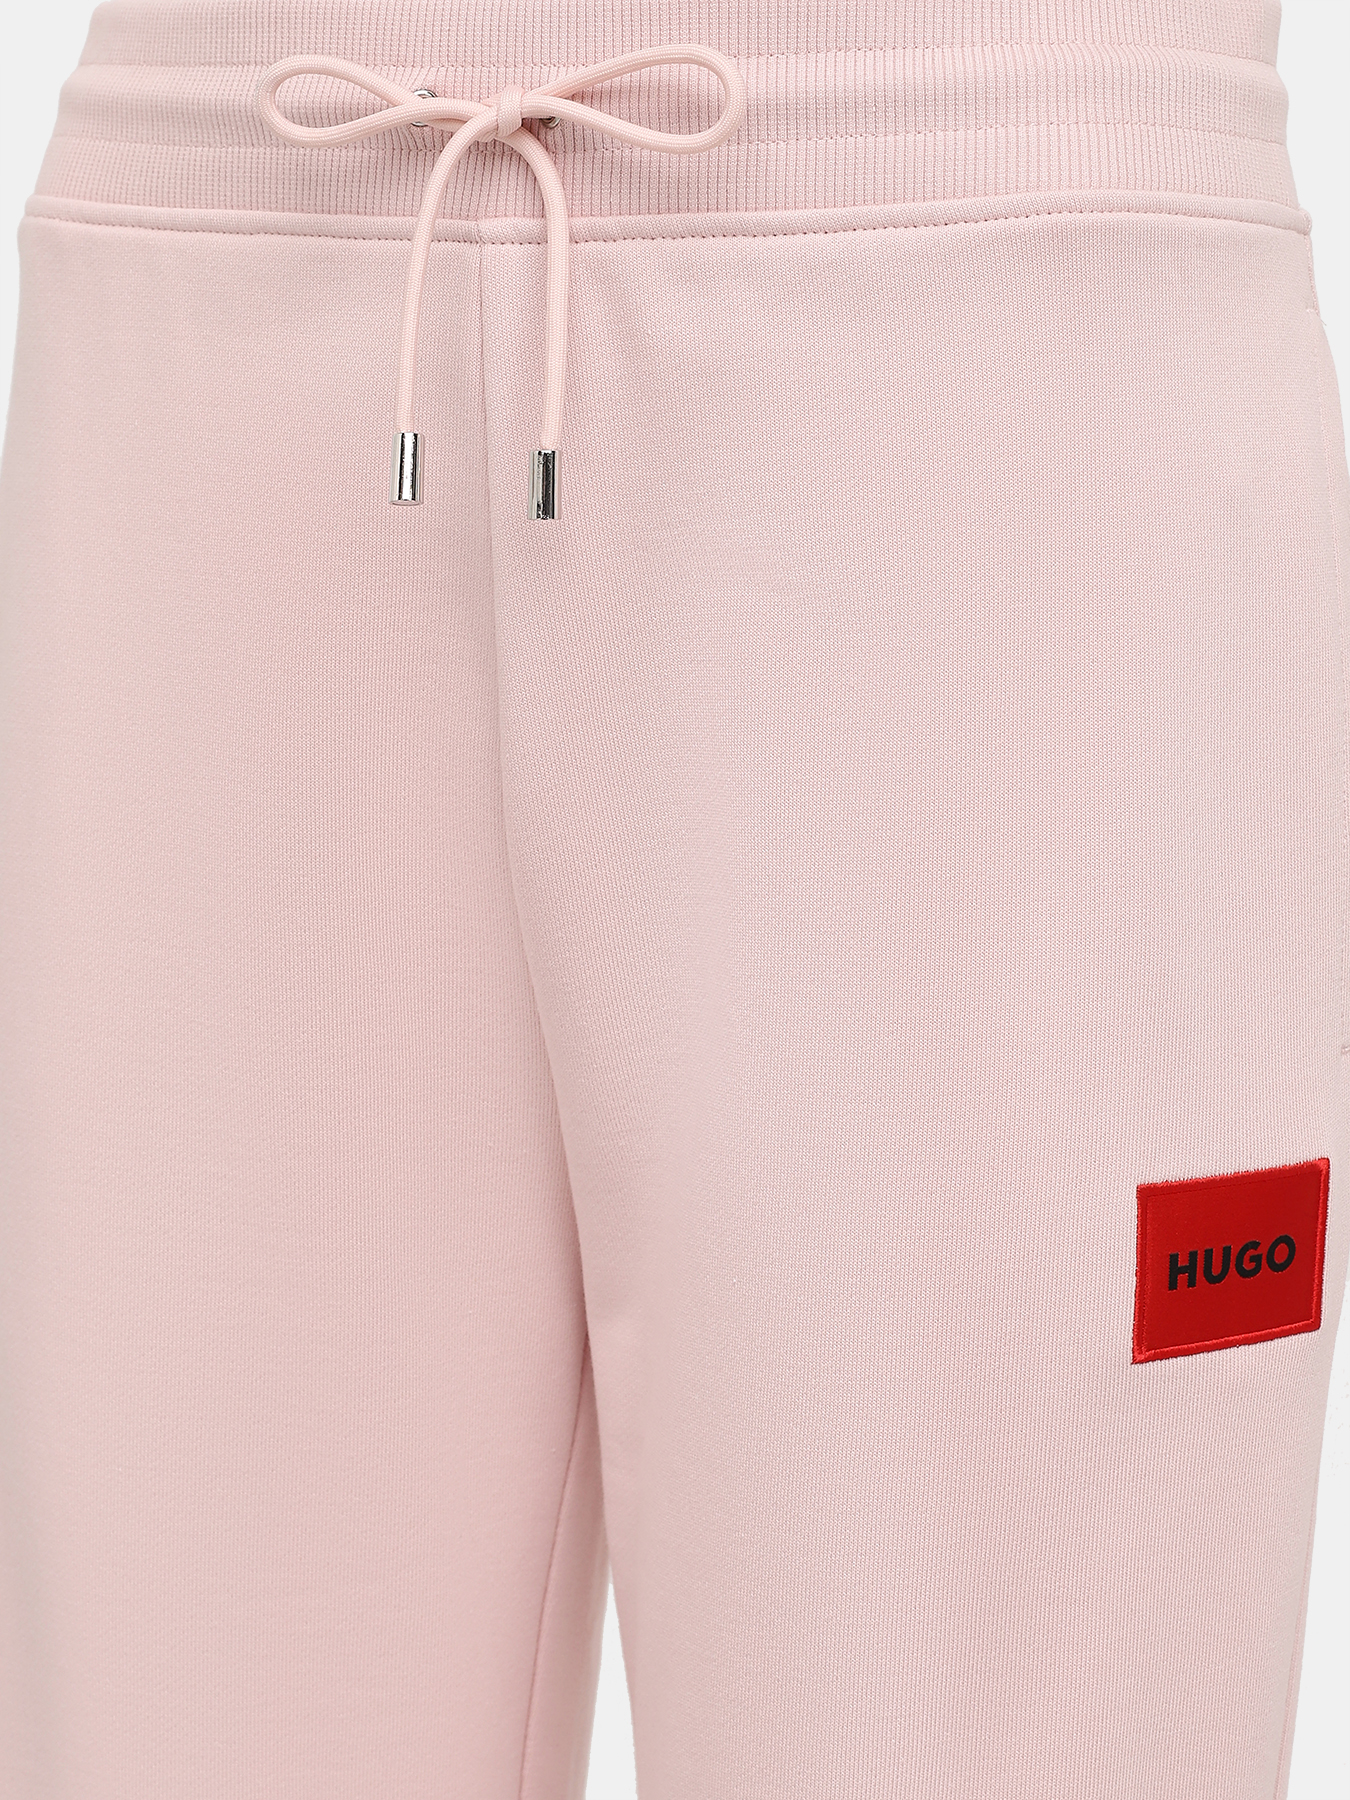 Спортивные брюки Dachibi redlabel HUGO 420594-043, цвет розовый, размер 44-46 - фото 2